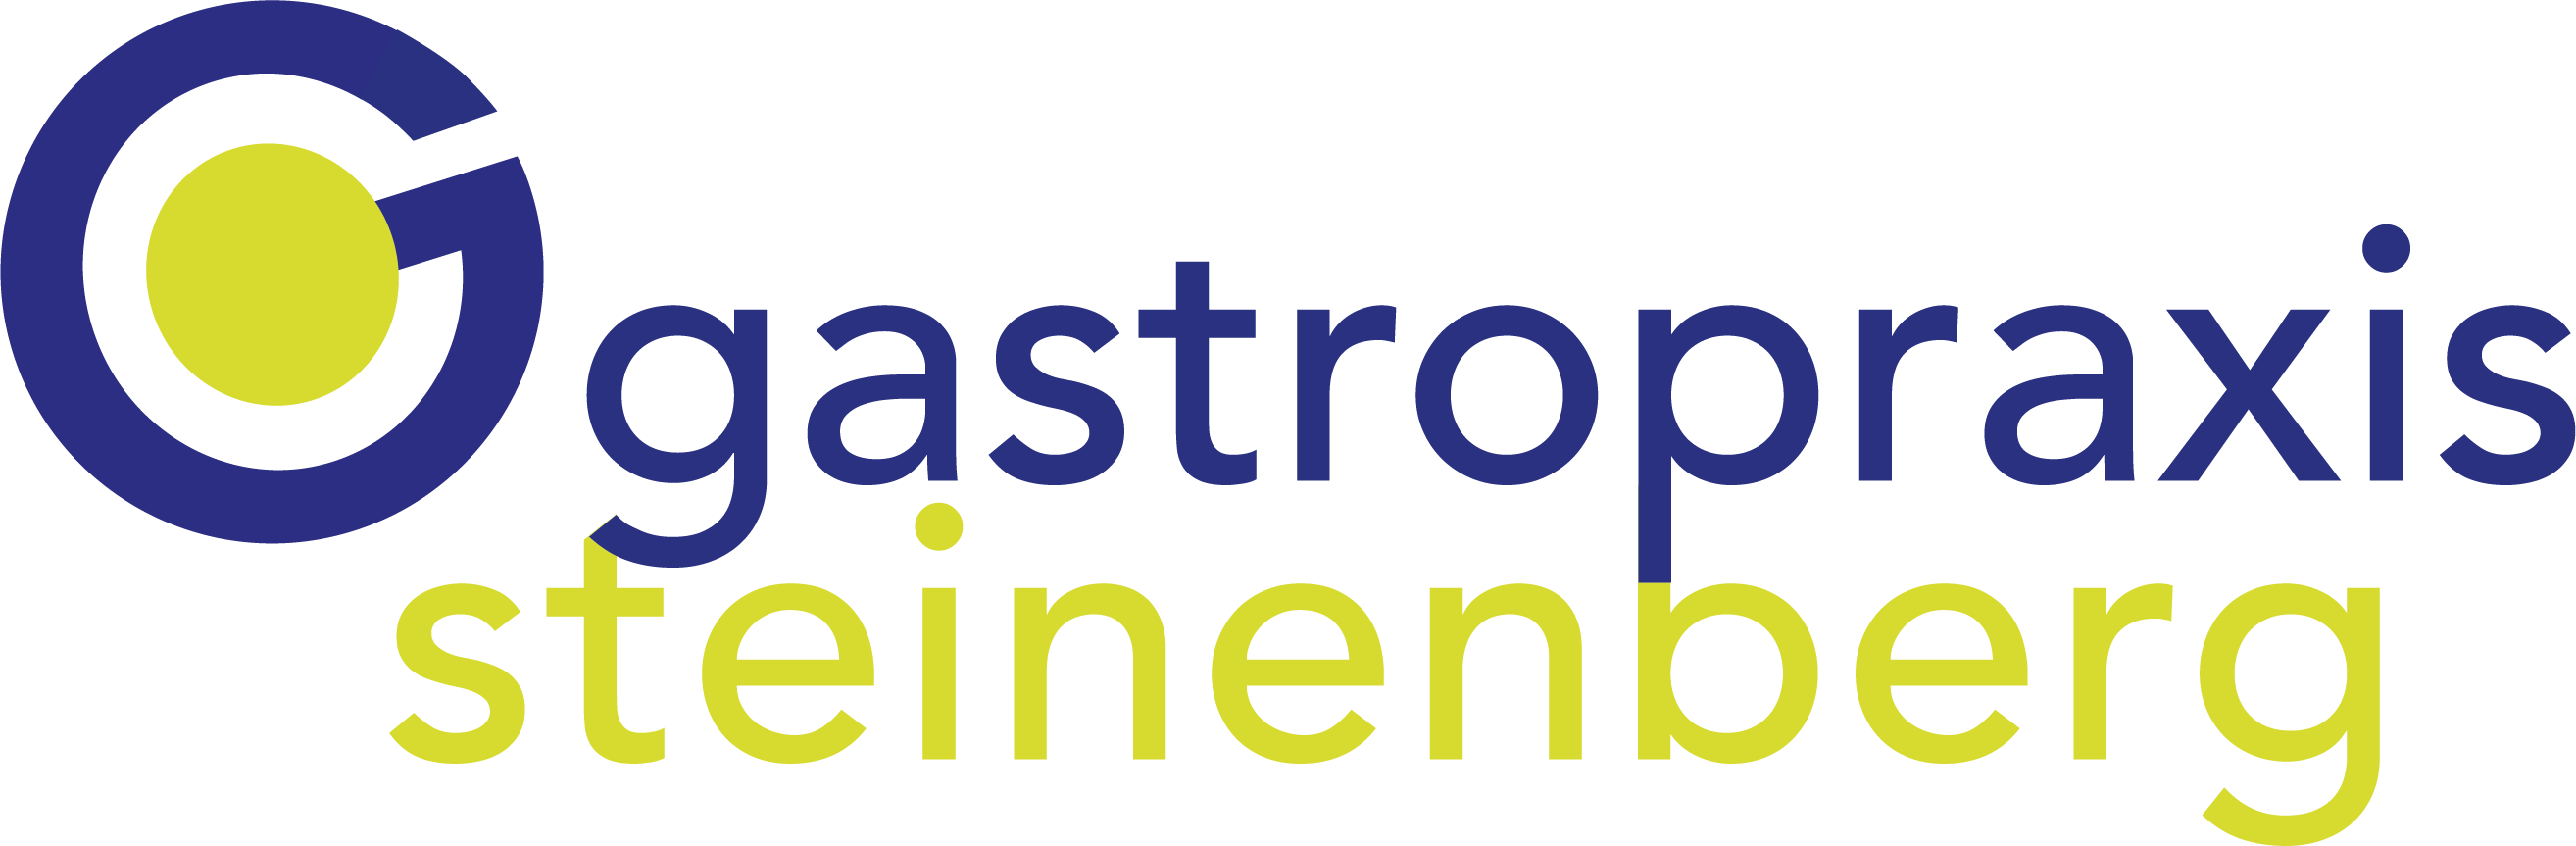 Gastopraxis-Steinenberg Logo